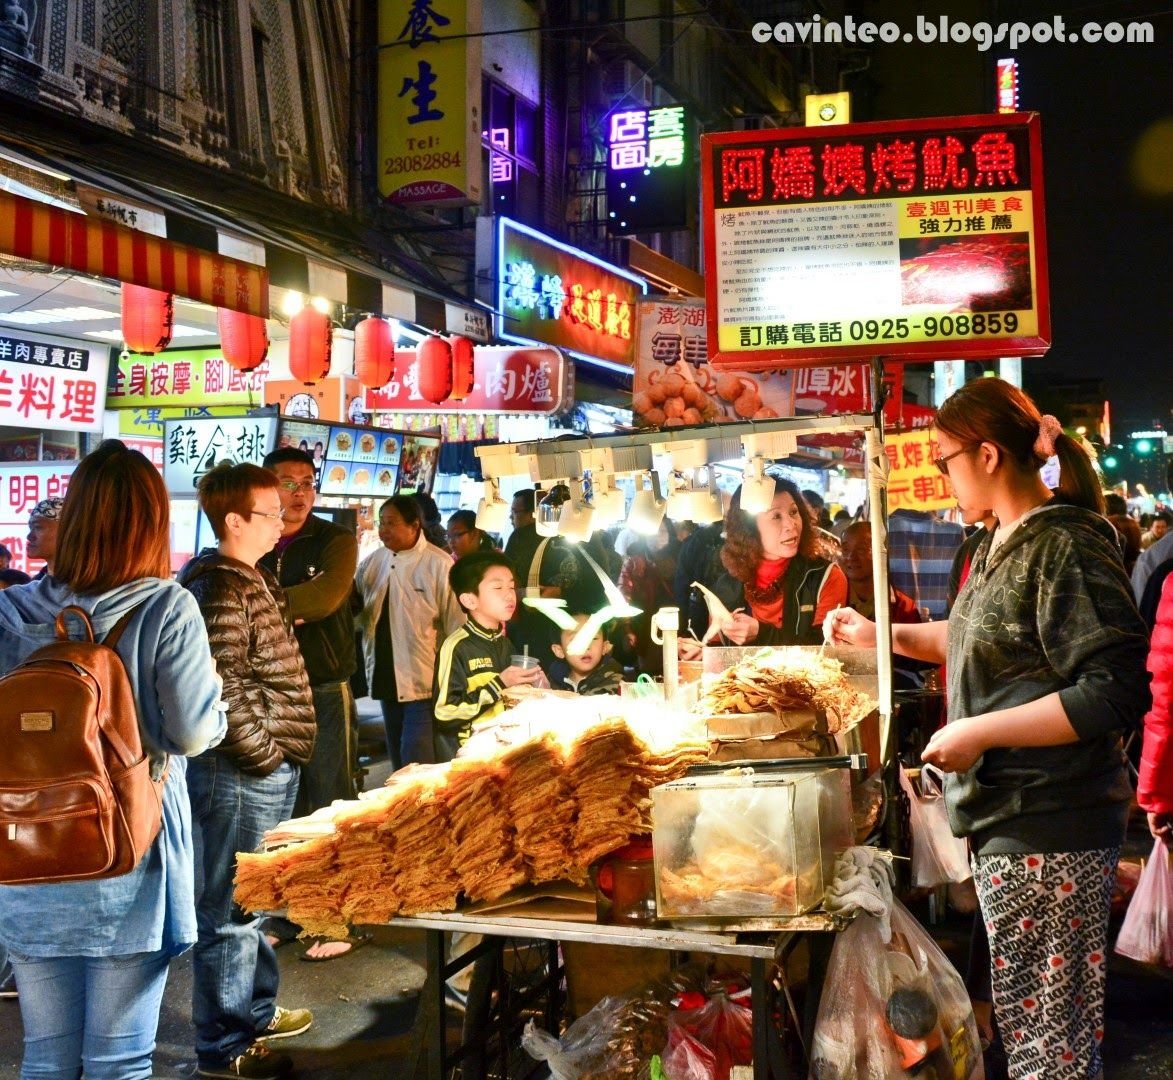 Ночной рынок гуанчжоу. Рынок в Китае Гуанчжоу. Гуанчжоу еда уличная. Китайская улица в Гуанчжоу. Ночные рынки Гуанчжоу.